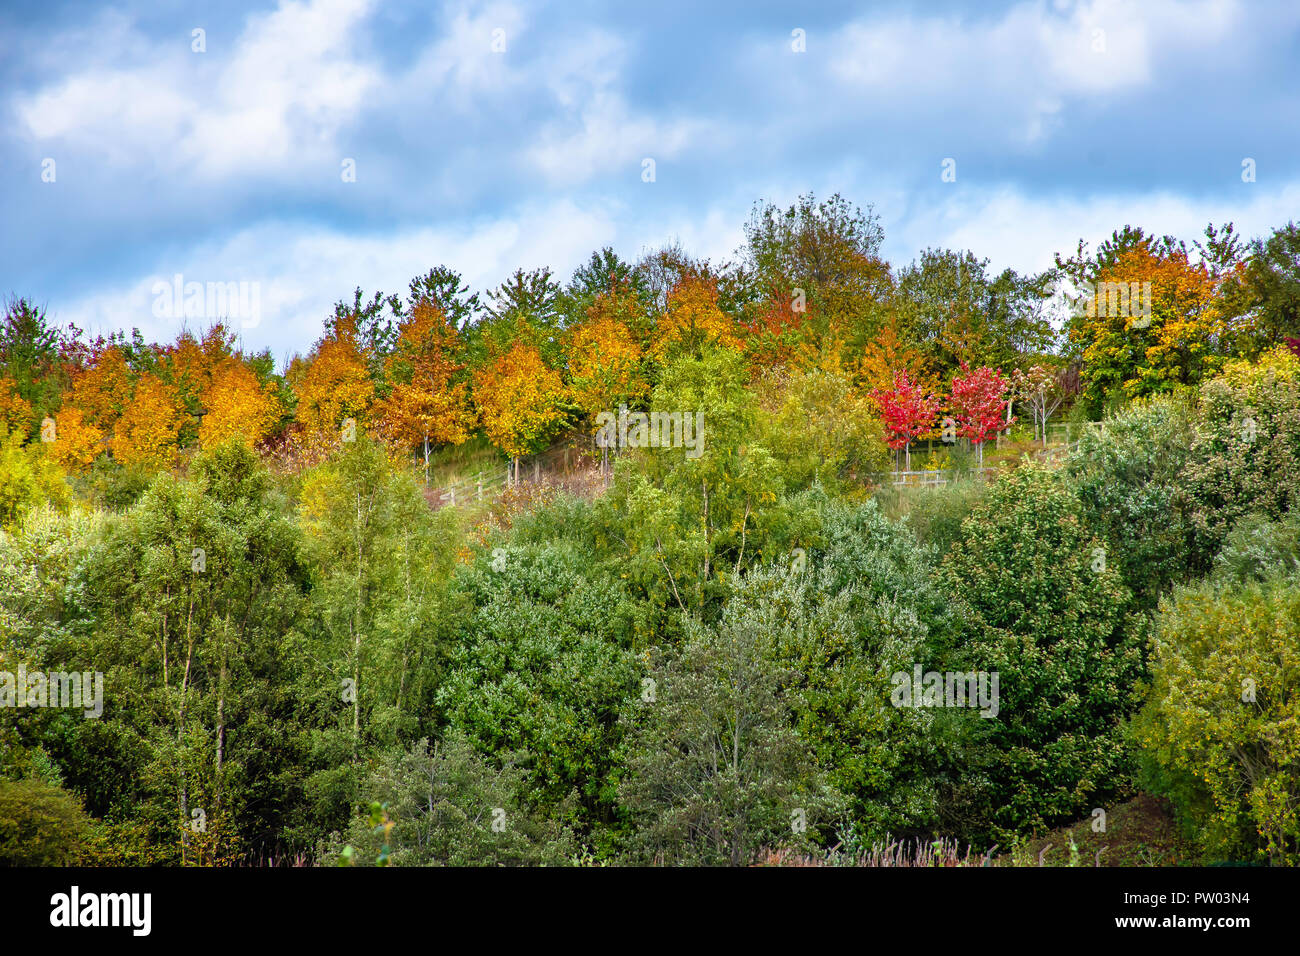 Avec les feuilles des arbres changent de couleur de plus en plus sur la pente de la colline, sur la campagne Staffordshire Uk.Automne paysage coloré de l'Angleterre rurale.changement de saison. Banque D'Images